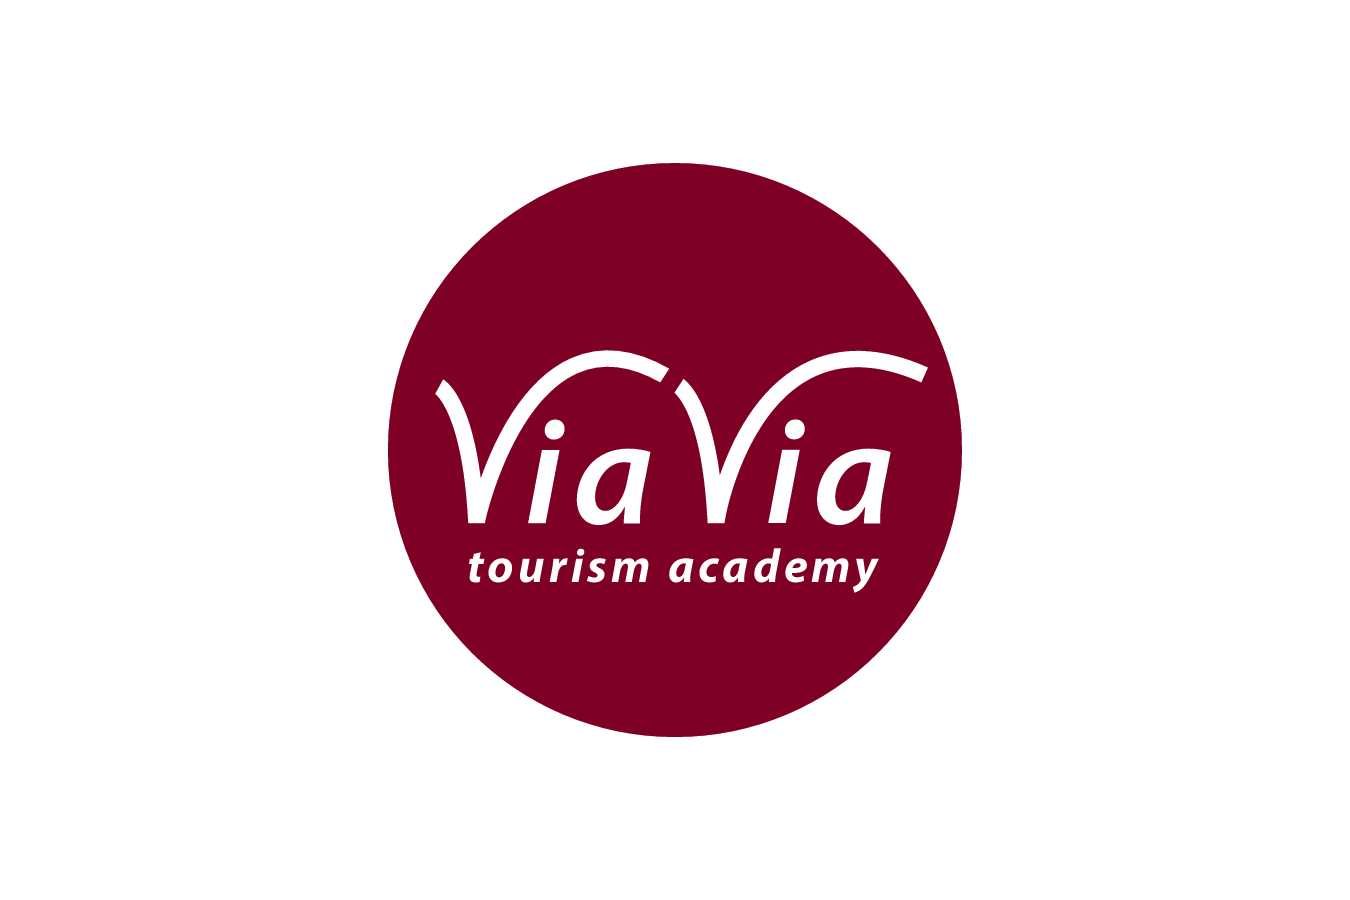 via-via-tourism-academy-vvta-logo-uganda